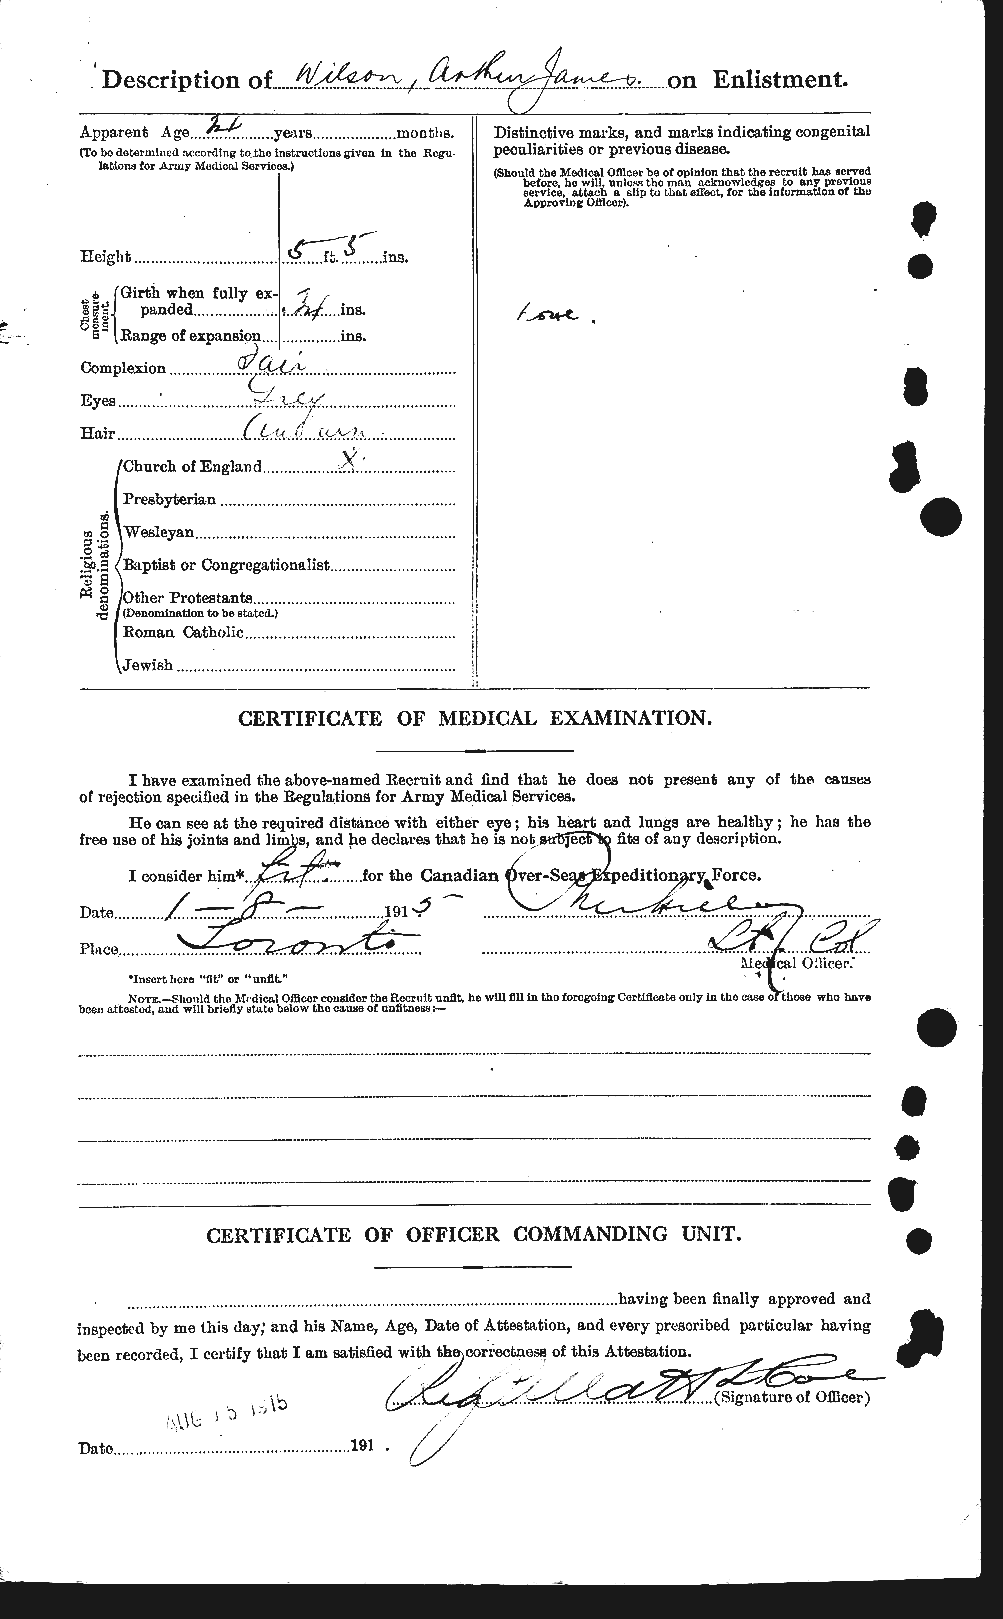 Dossiers du Personnel de la Première Guerre mondiale - CEC 681421b